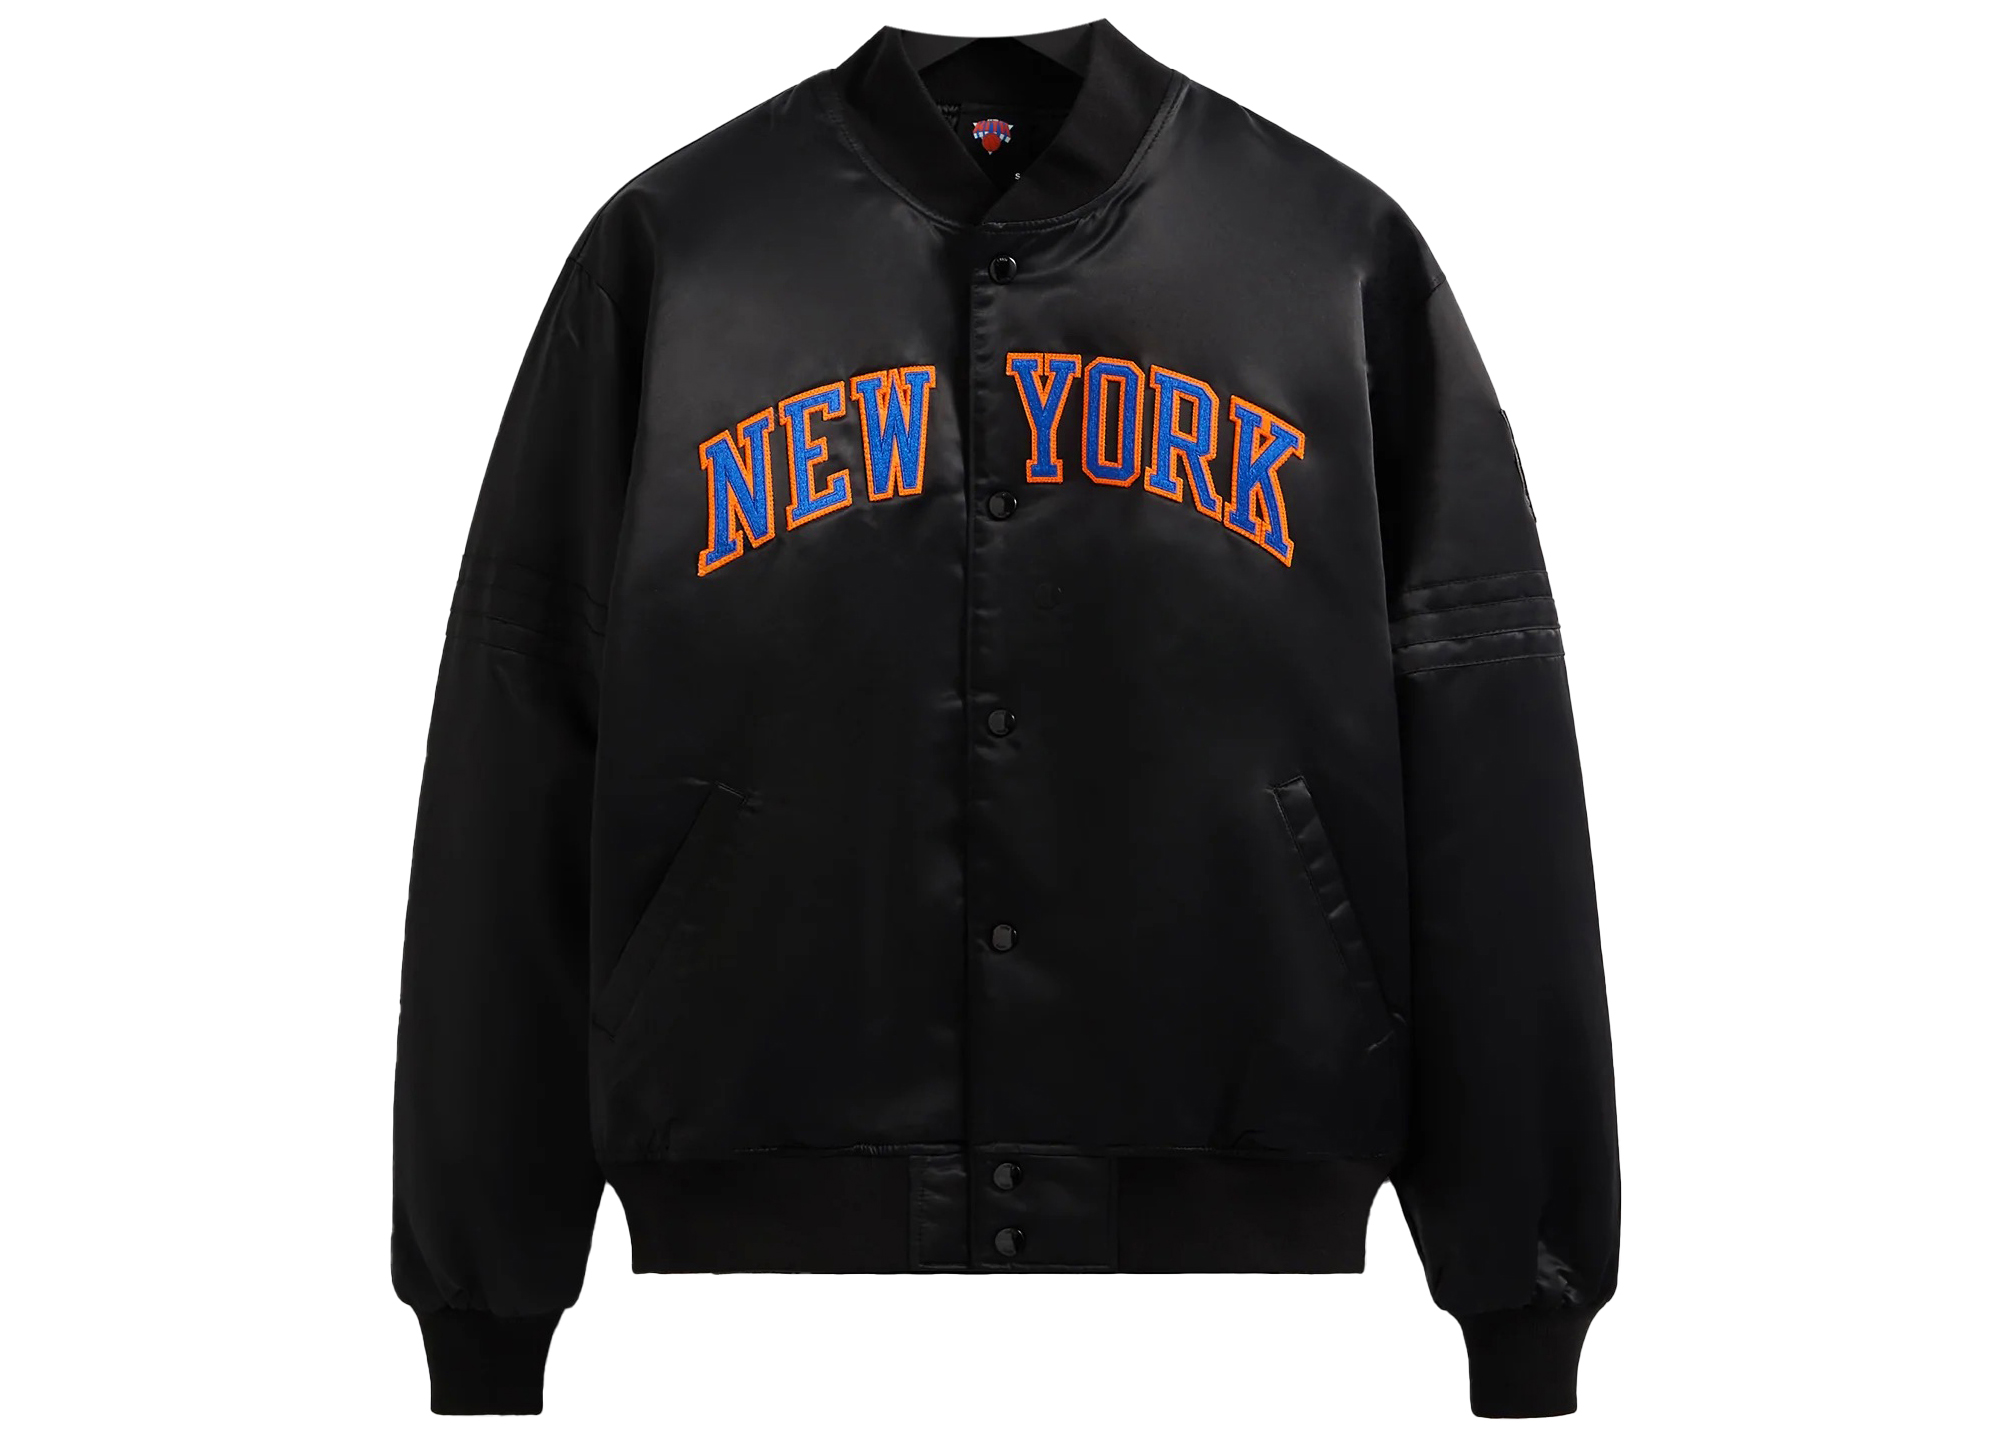 KITH Knicks satin bomber jacket